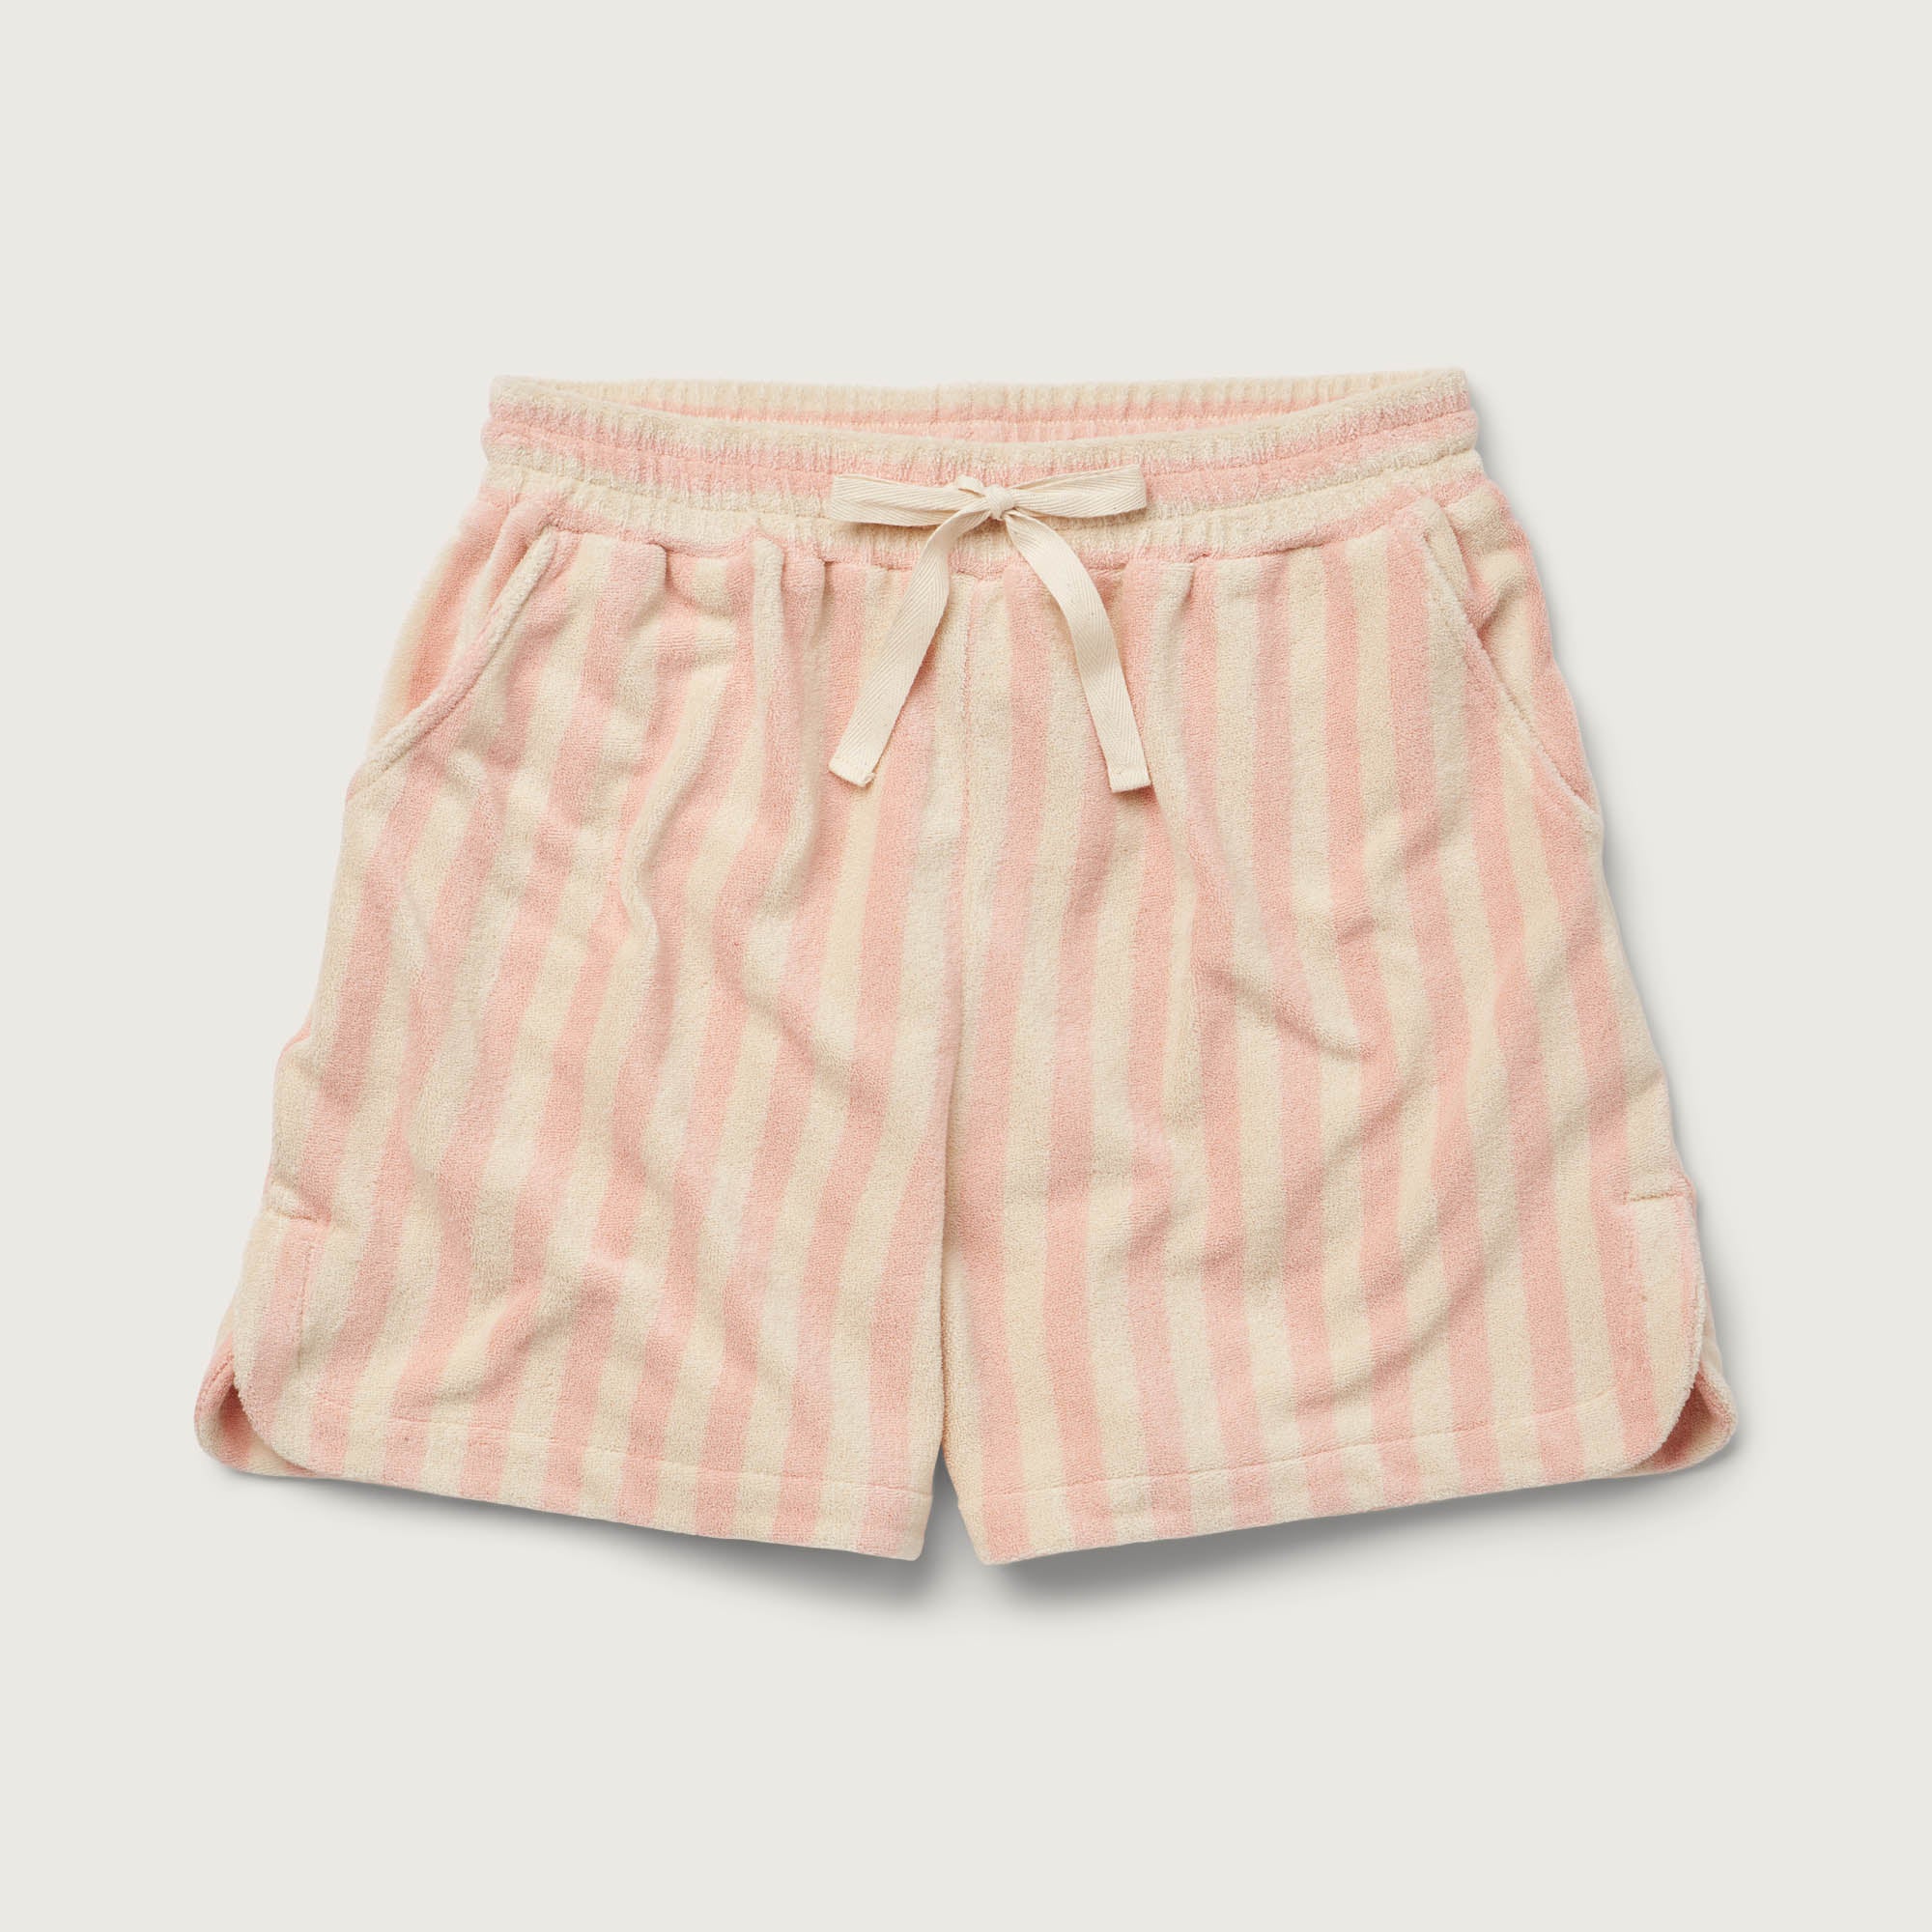 Bongusta, Product image, Naram Gym Shorts, tropical & creme, 2 of 2}